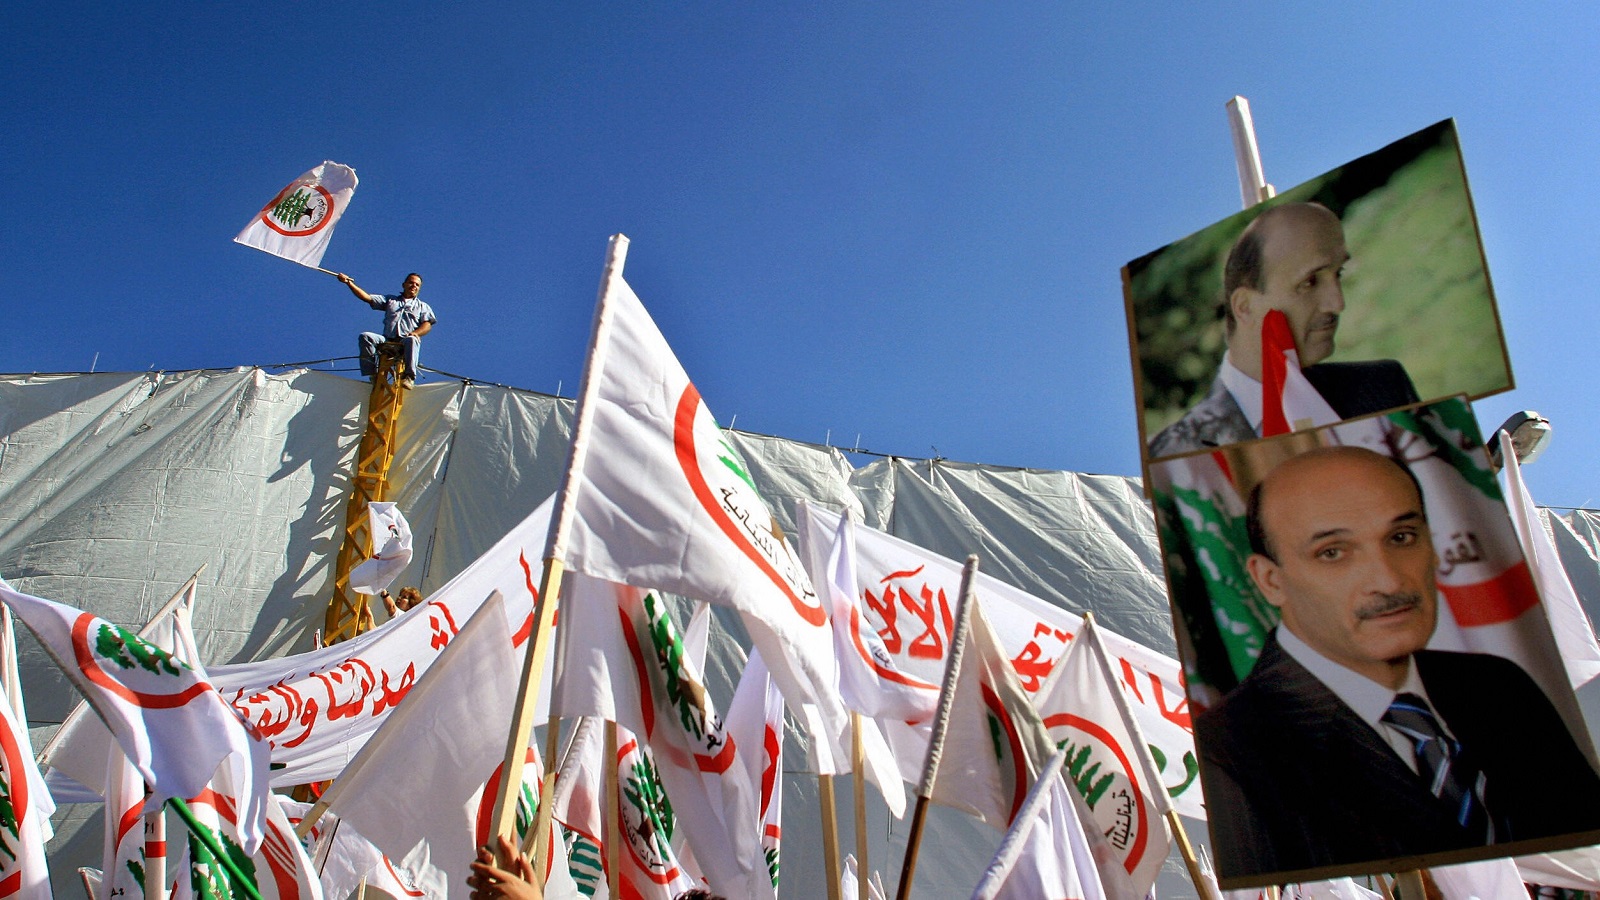 "القوات اللبنانية": العمومية الوطنية وقيد الخصوصية المسيحية